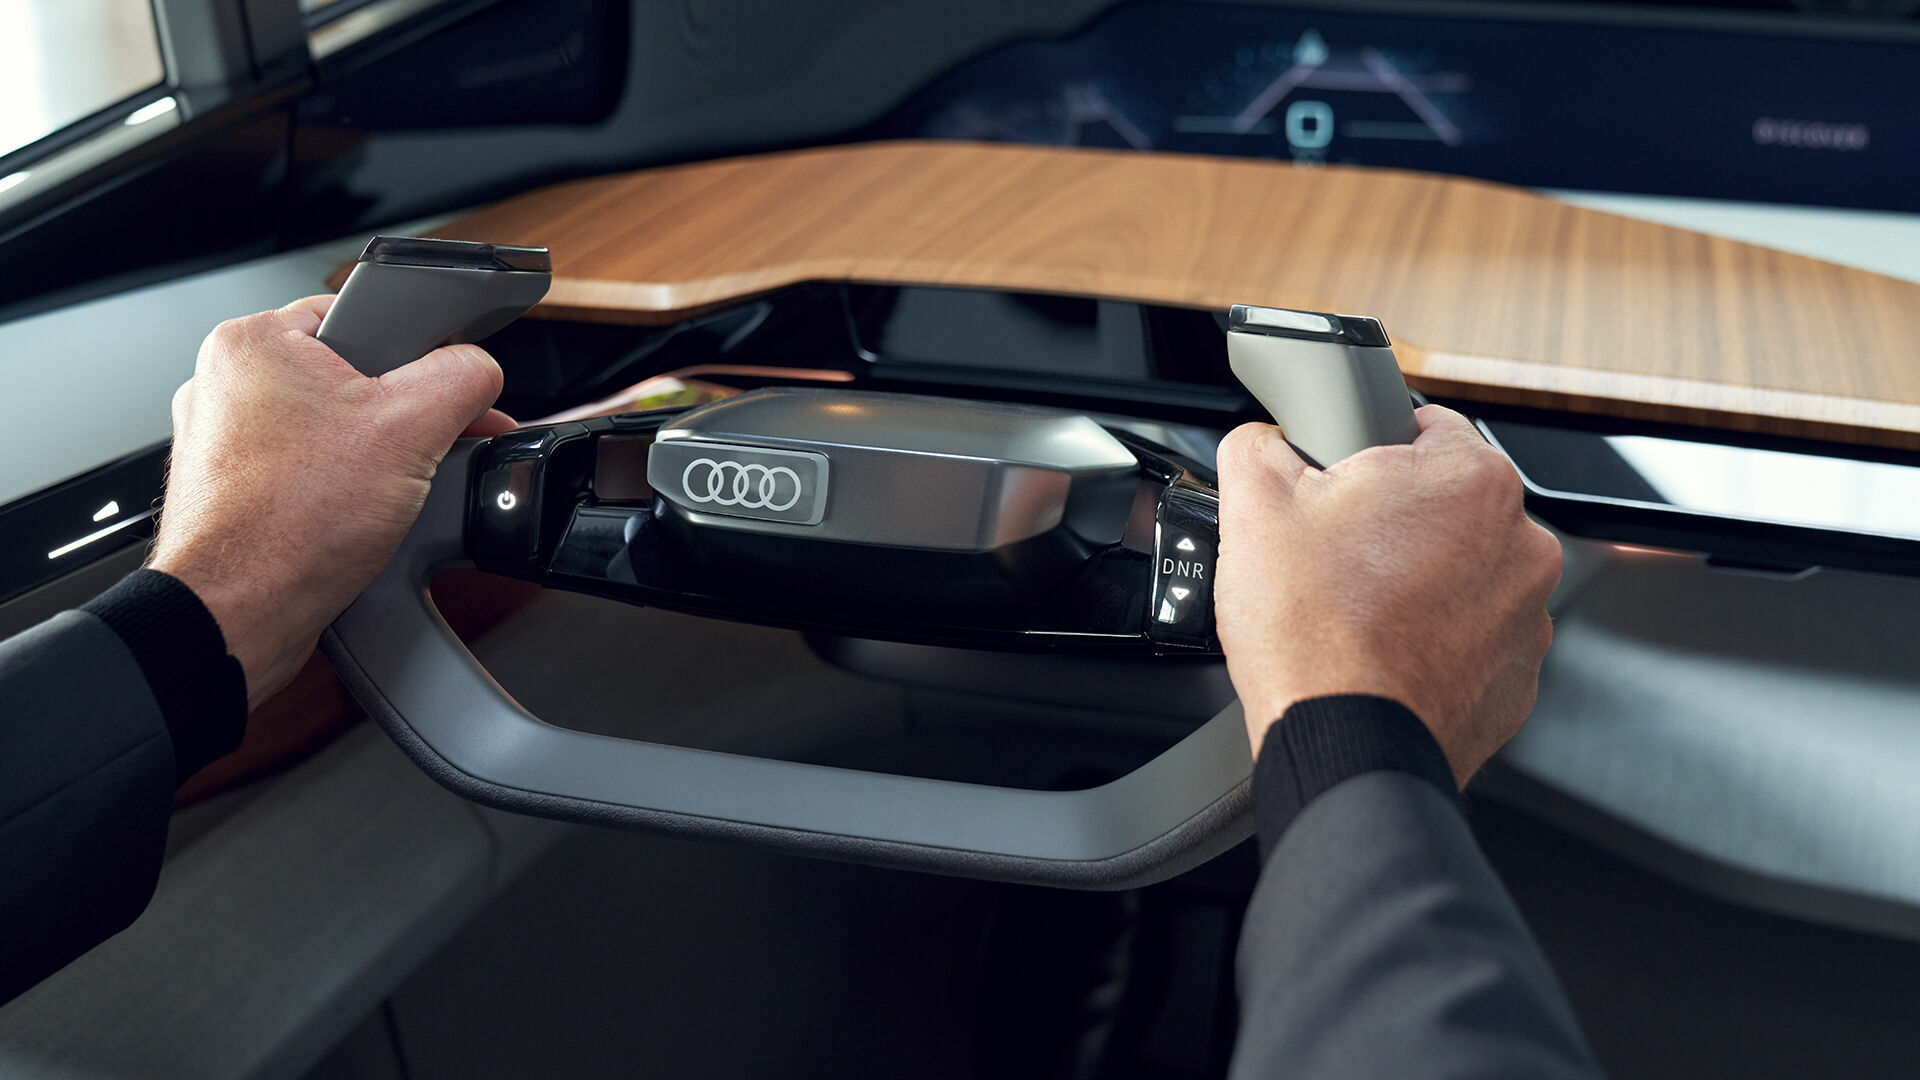 Neue Ausrichtung der Marke wird sichtbar – Audi startet neue Markenkampagne